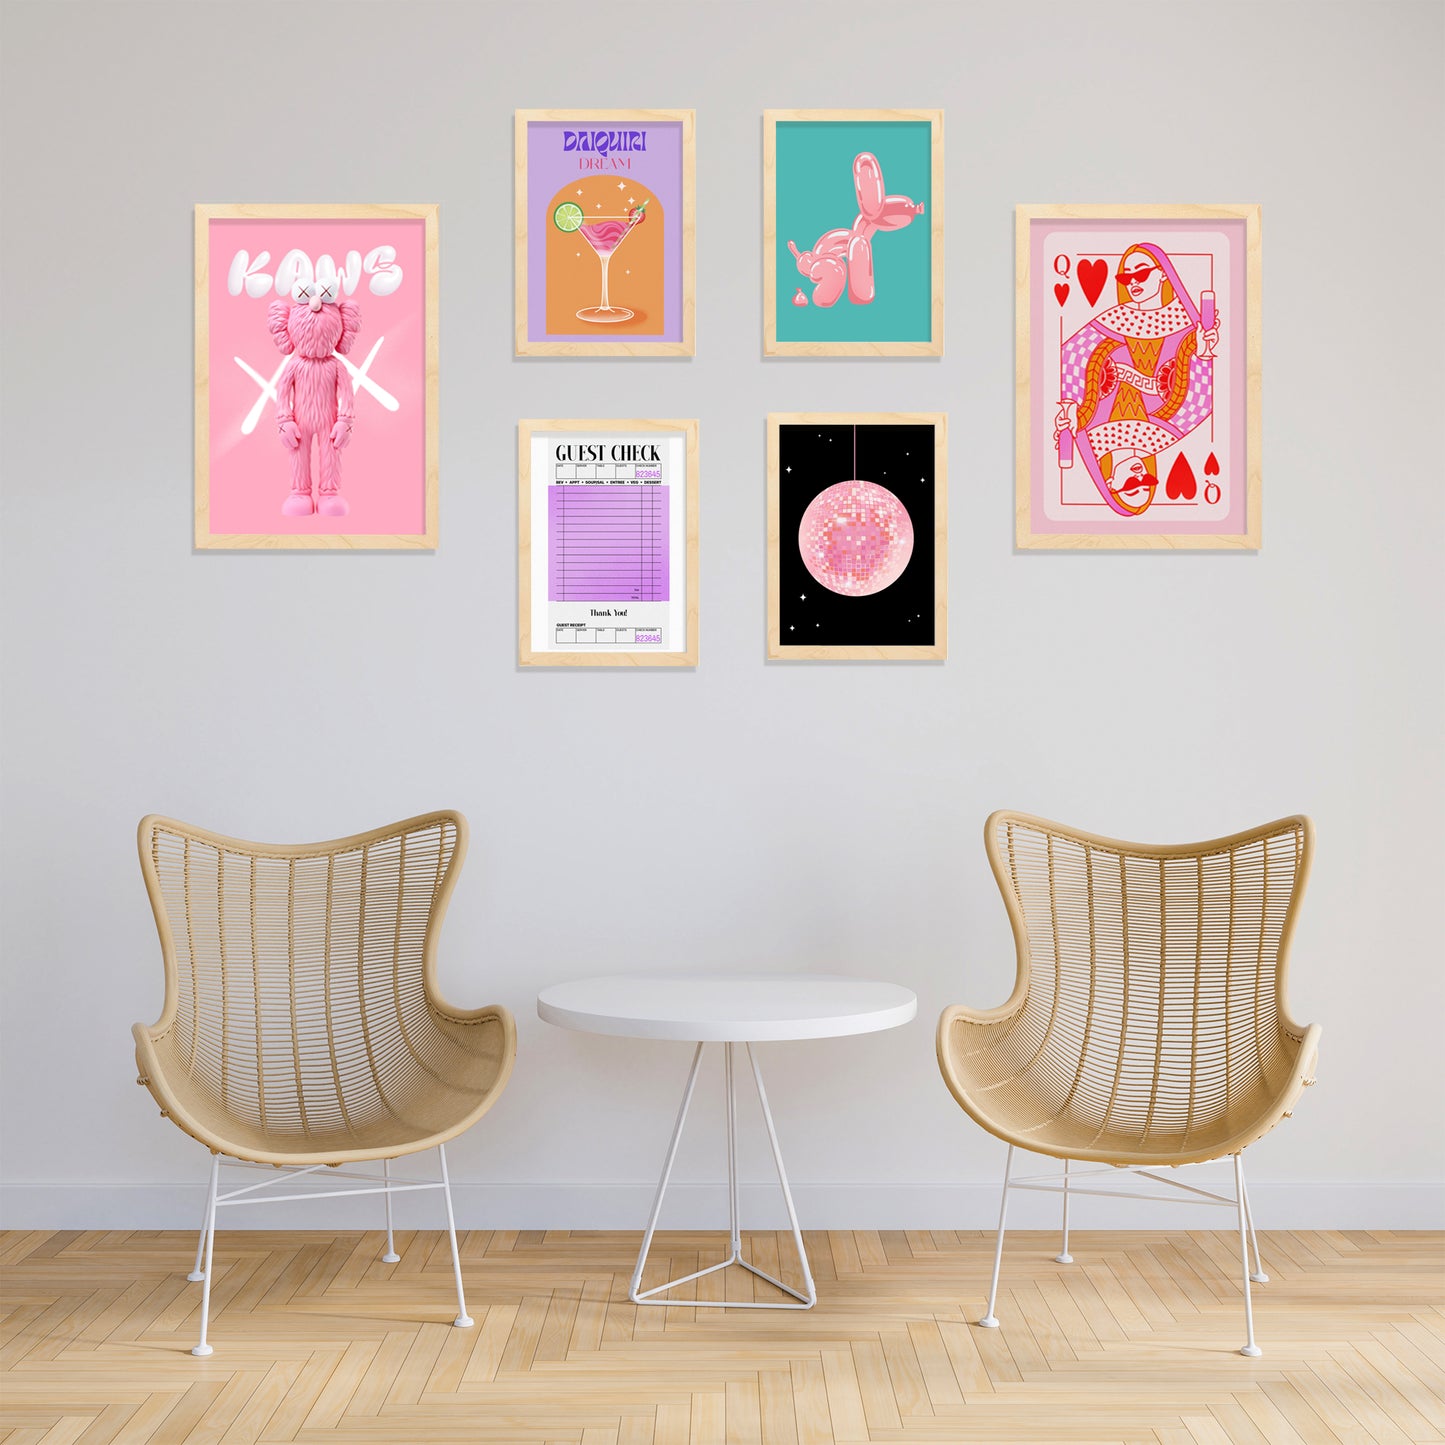 Illustraciones de arte moderno femenino tonos rosas